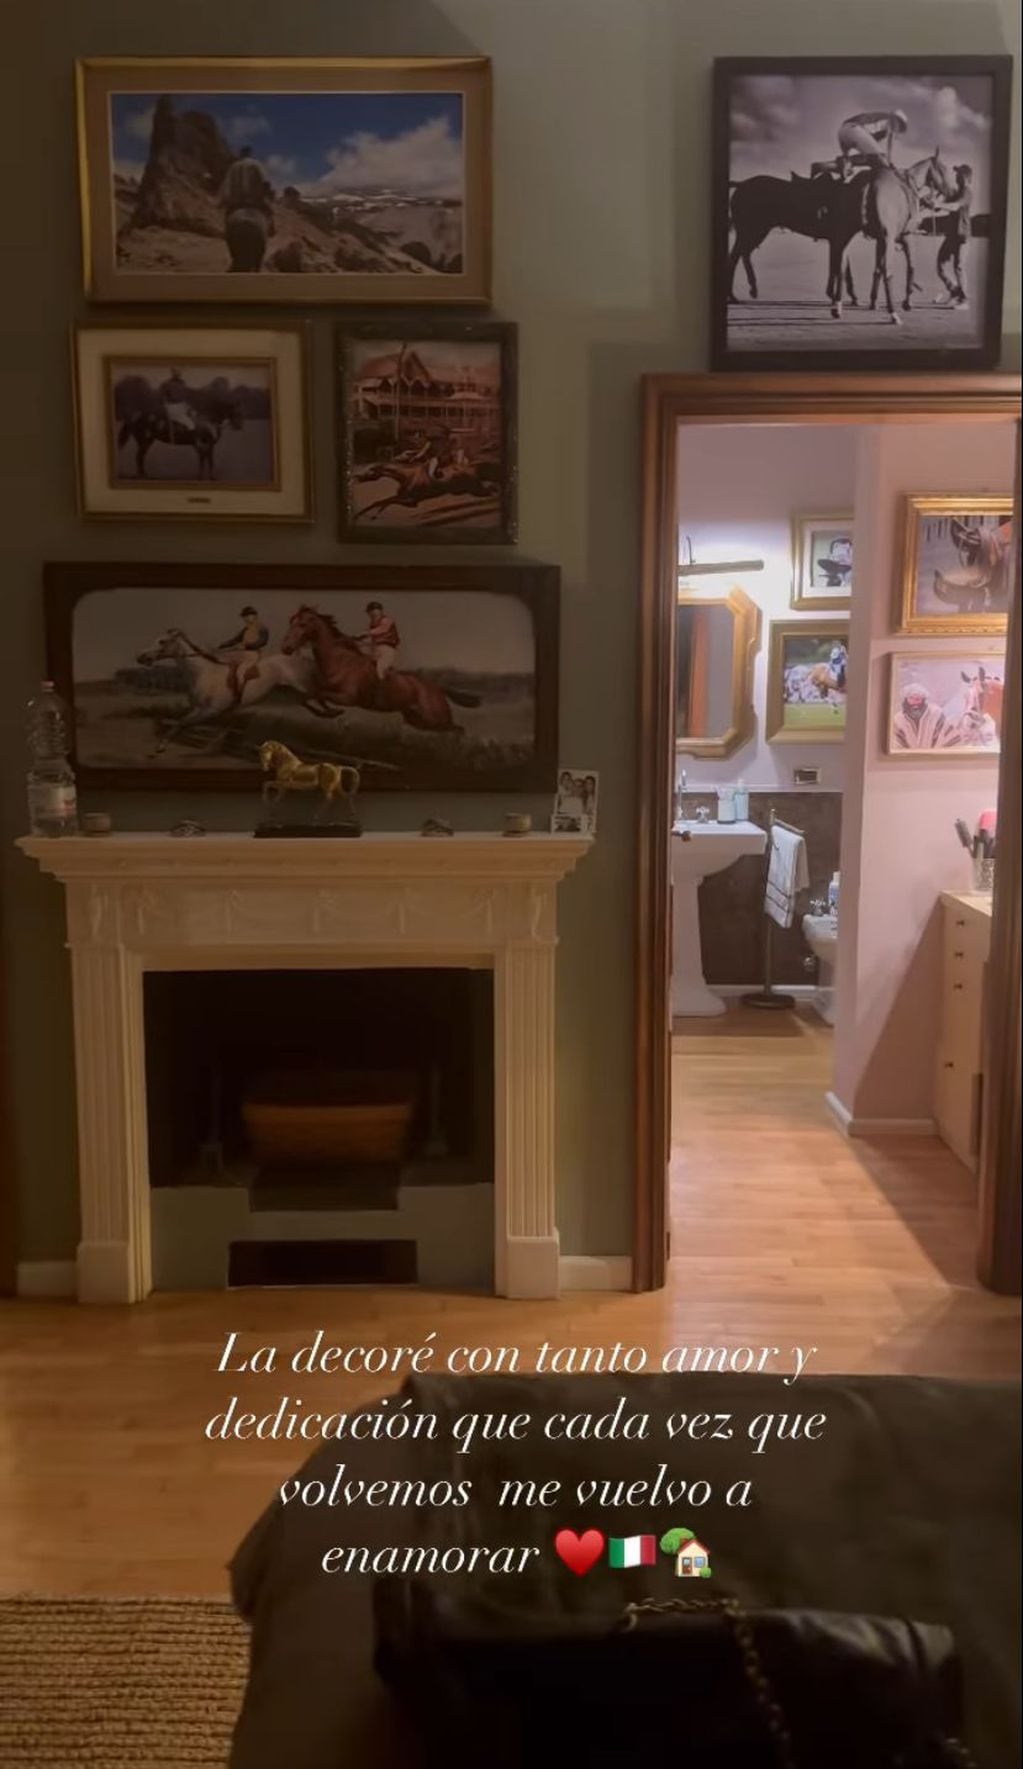 La habitación de Wanda Nara y Mauro Icardi de su casa de campo de Milán. Captura de historias.